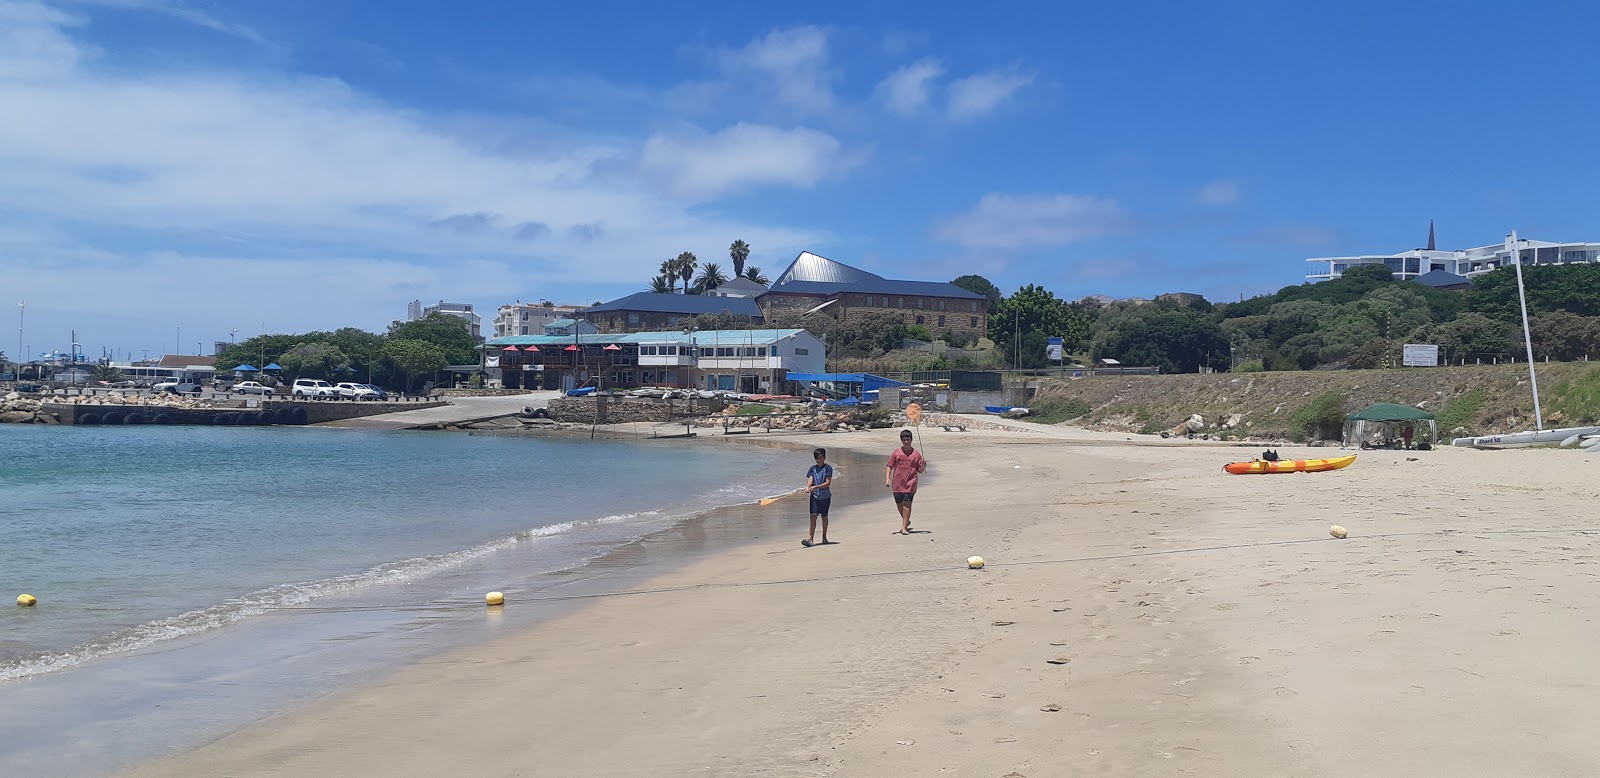 Zdjęcie Santos beach - popularne miejsce wśród znawców relaksu